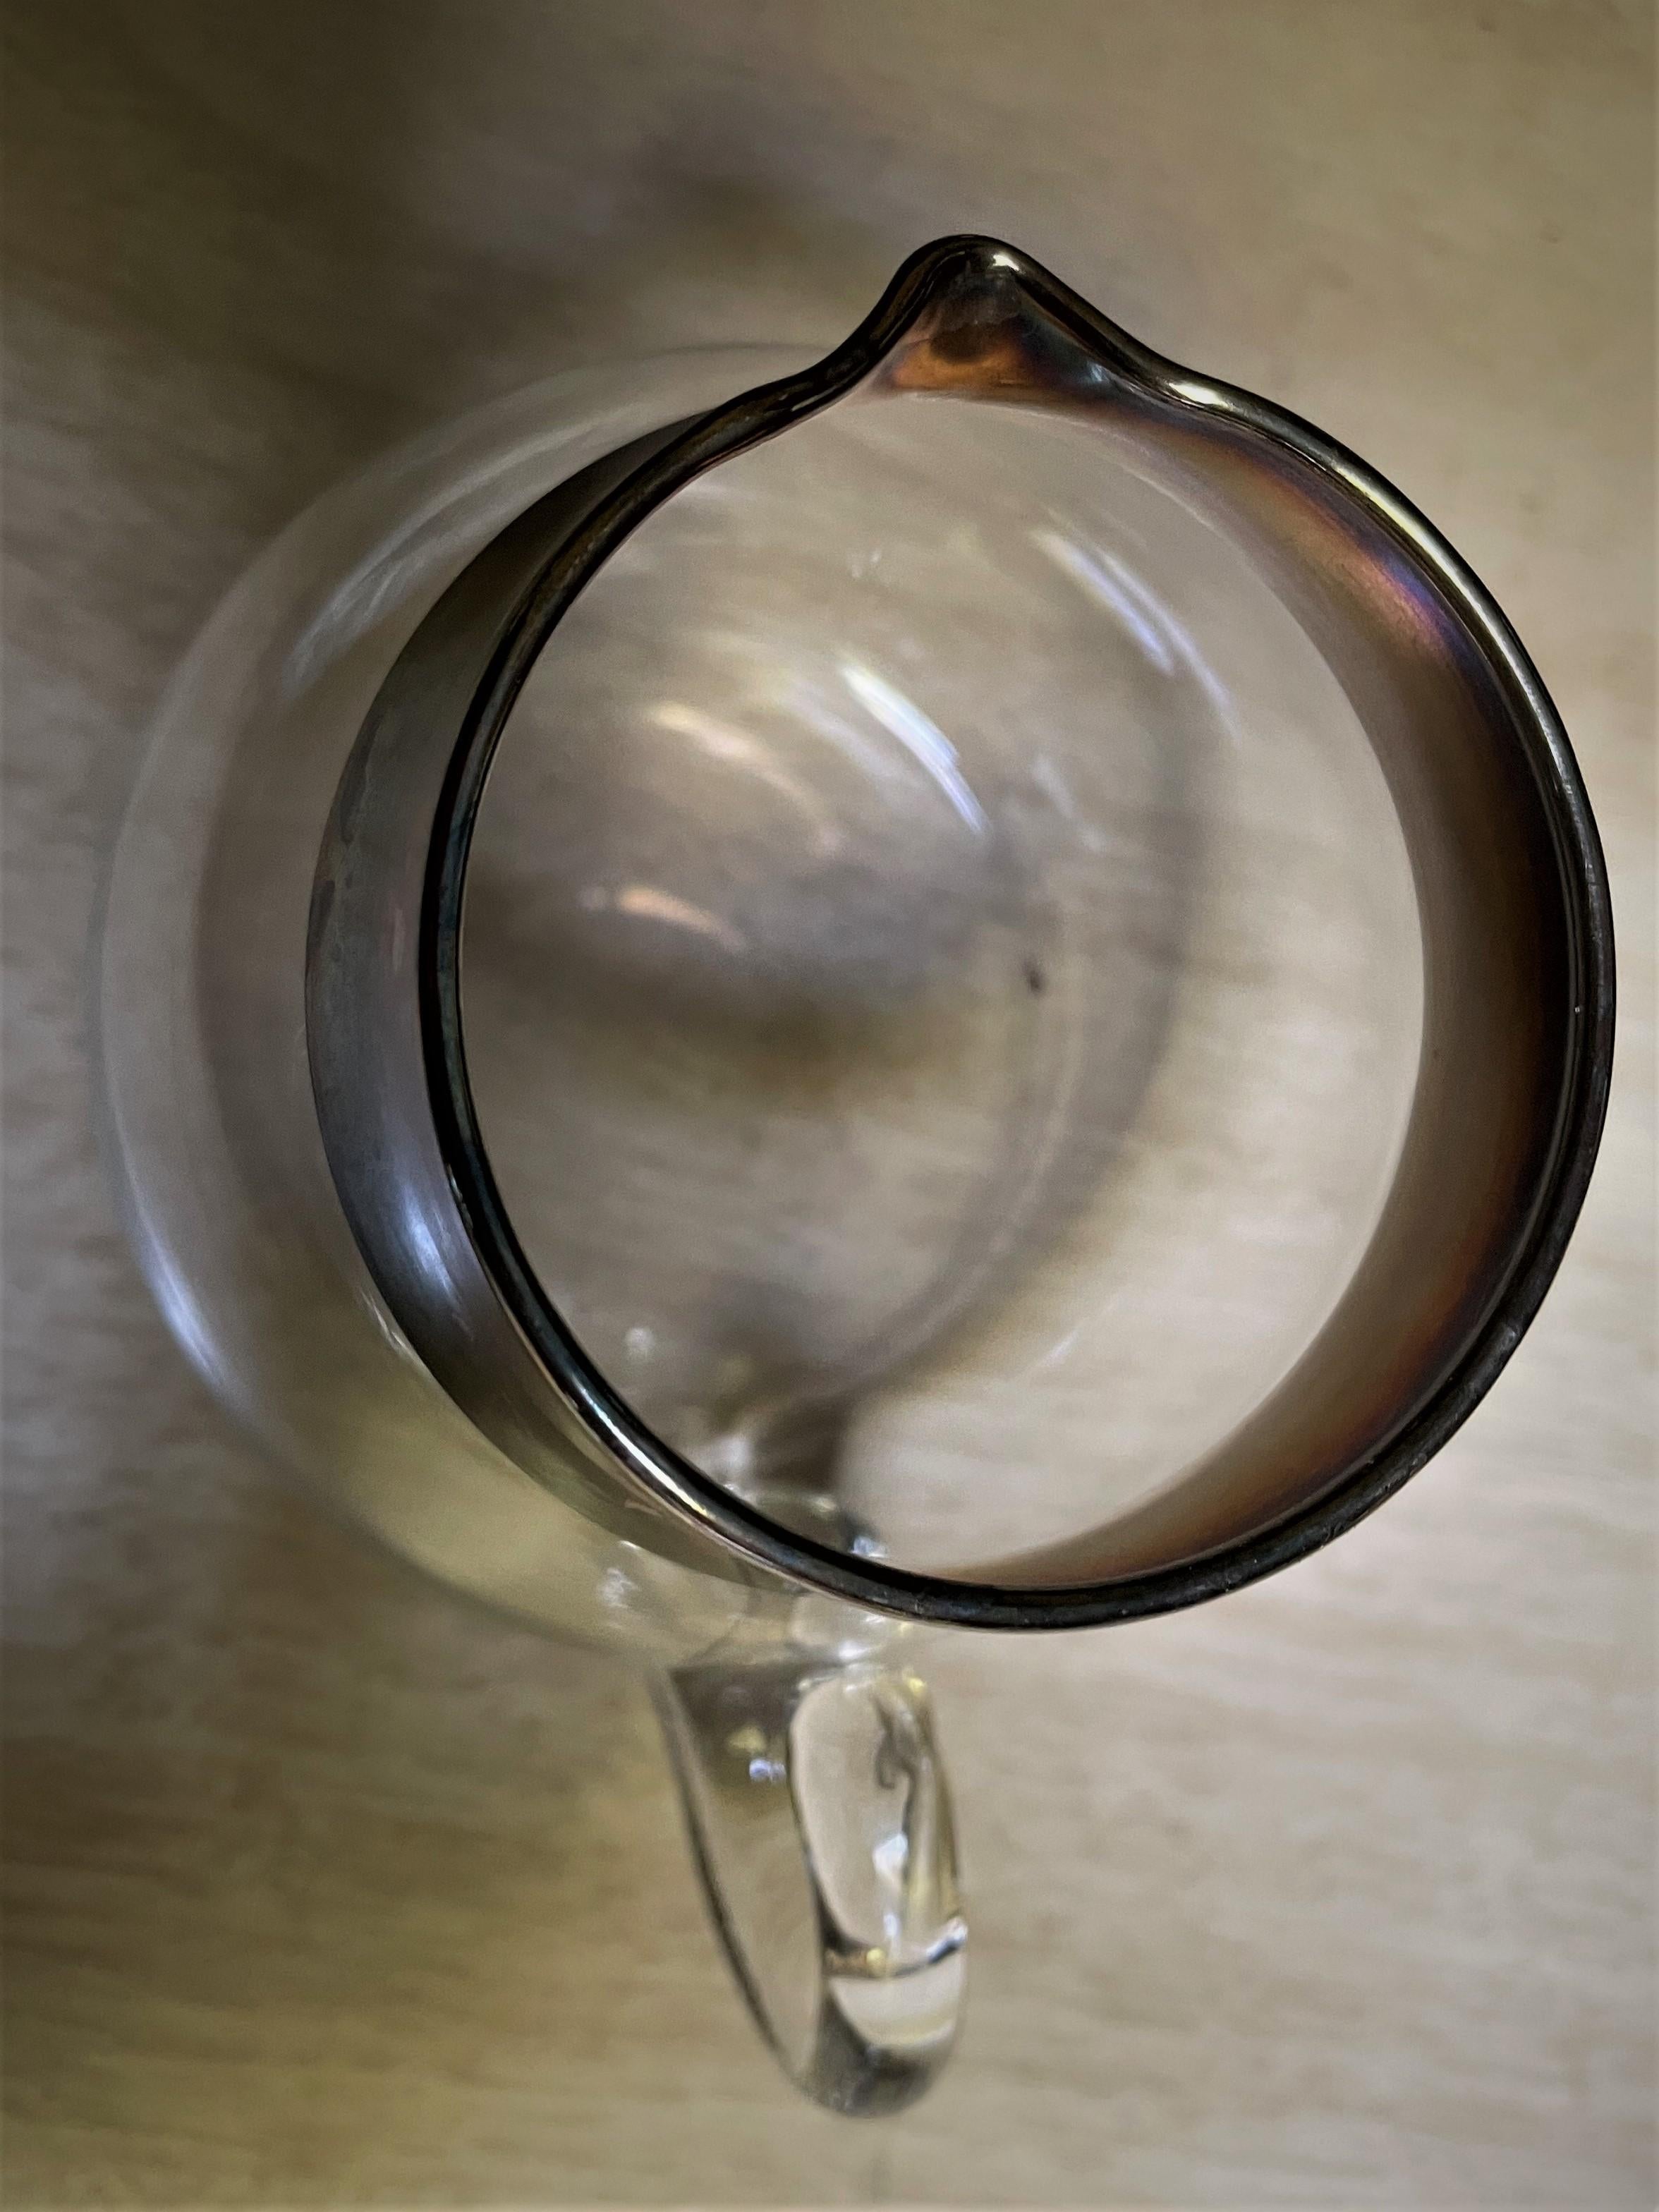 Dies ist eine schöne, klassische Mitte des Jahrhunderts Stil Dorothy Thorpe Roly-Poly Milchkännchen mit einem Sterling-Silber-Overlay-Band um die Spitze eines klaren Glas bauchigen Mini Krug, der eine angewandte Glasgriff hat. Das Milchkännchen ist